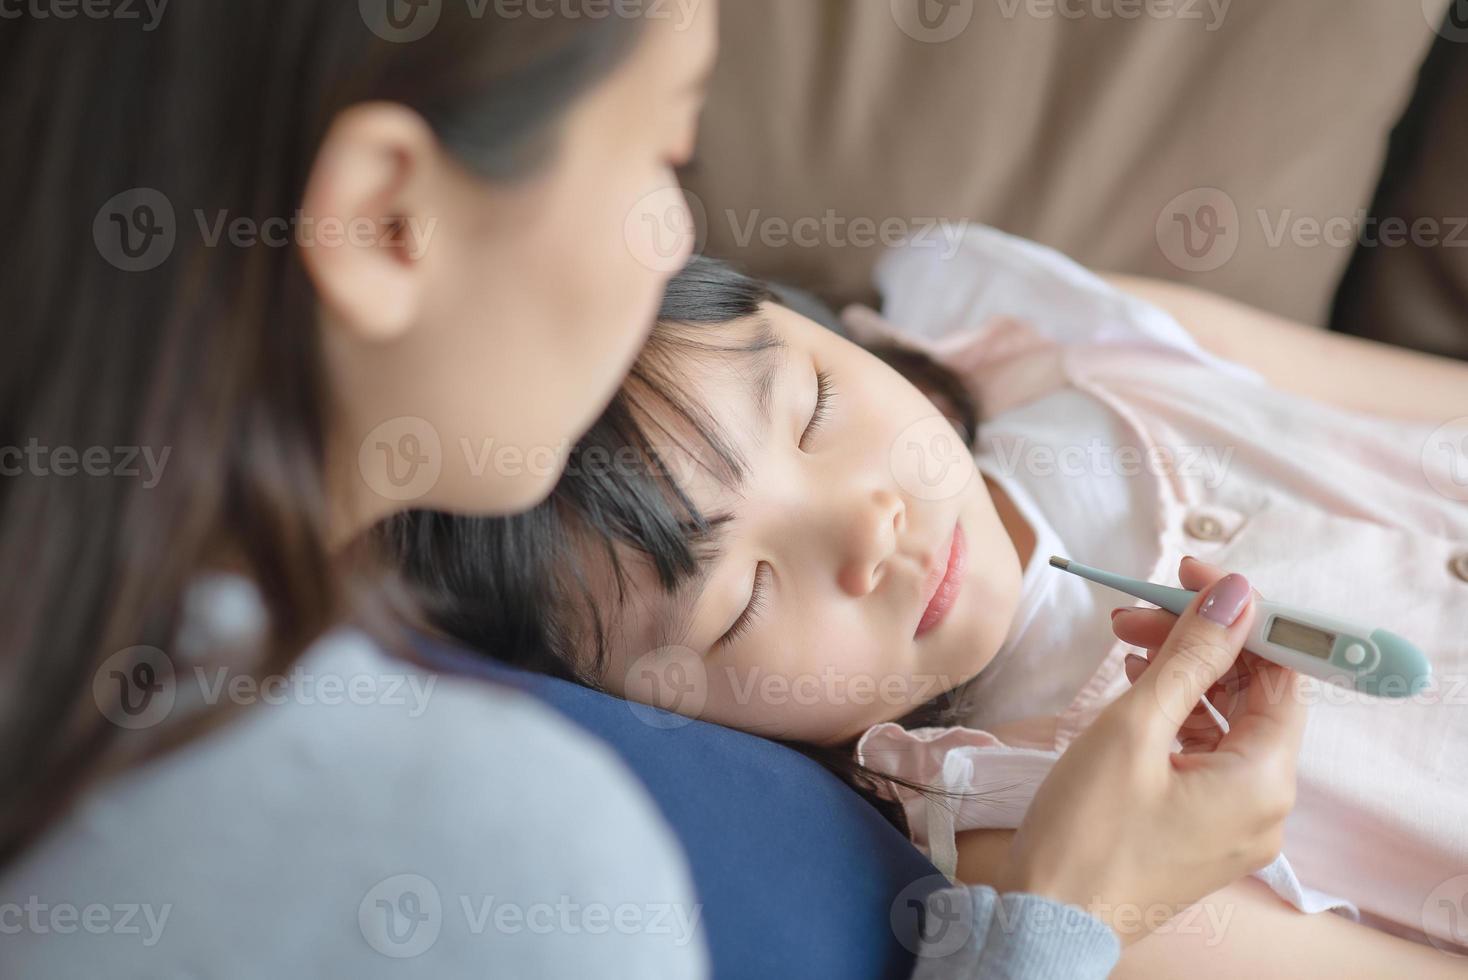 mère asiatique vérifiant la température corporelle de son enfant à l'aide d'un thermomètre qui a eu de la fièvre et des maladies à la maison. photo